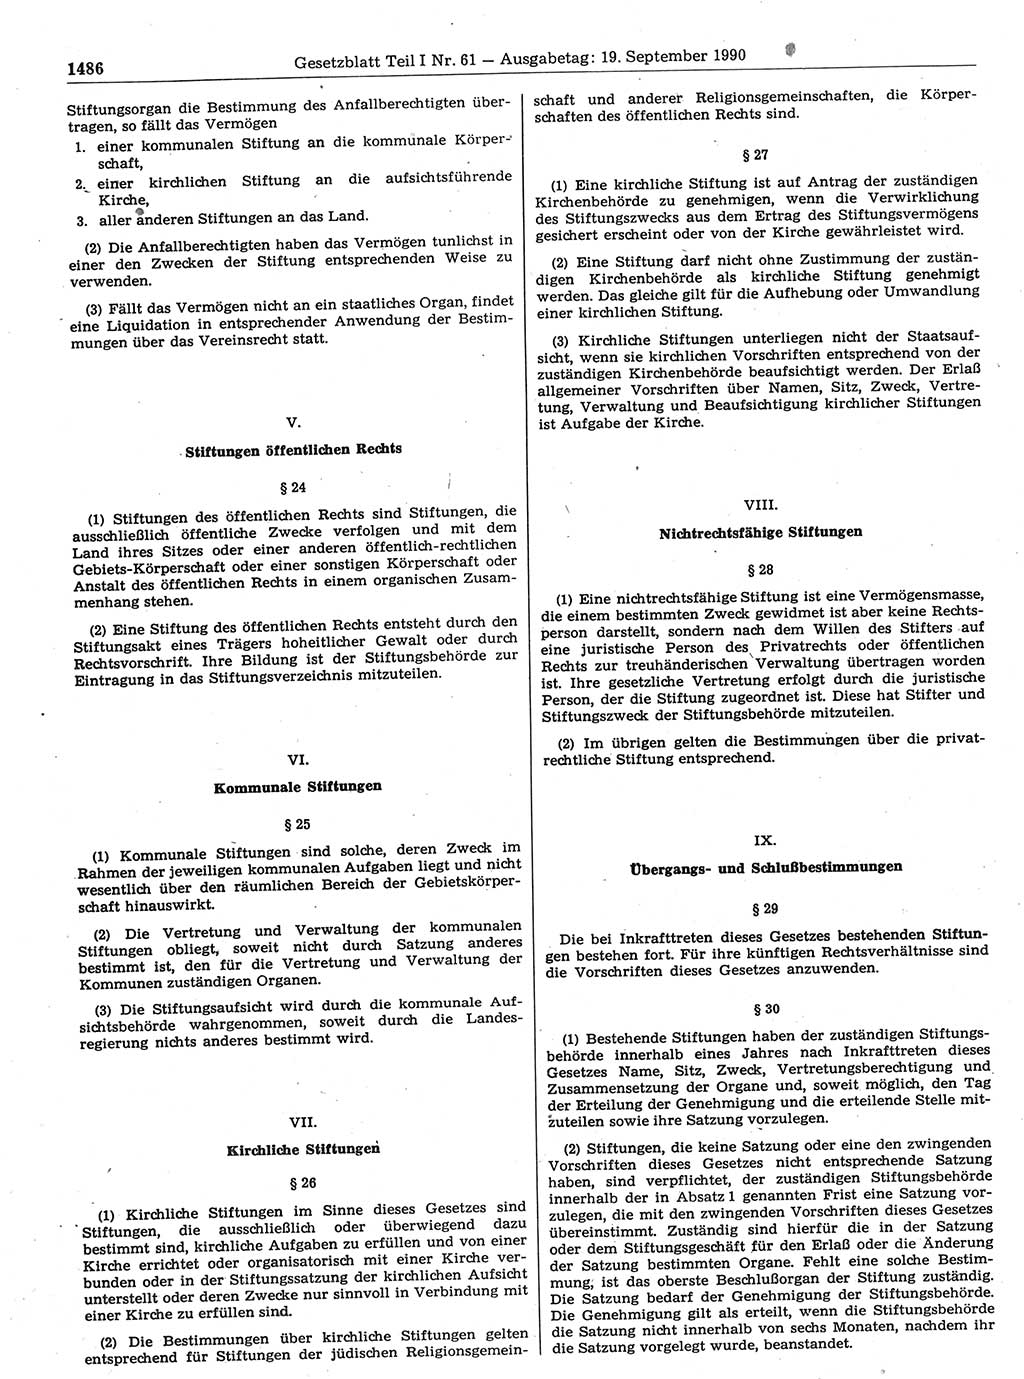 Gesetzblatt (GBl.) der Deutschen Demokratischen Republik (DDR) Teil Ⅰ 1990, Seite 1486 (GBl. DDR Ⅰ 1990, S. 1486)